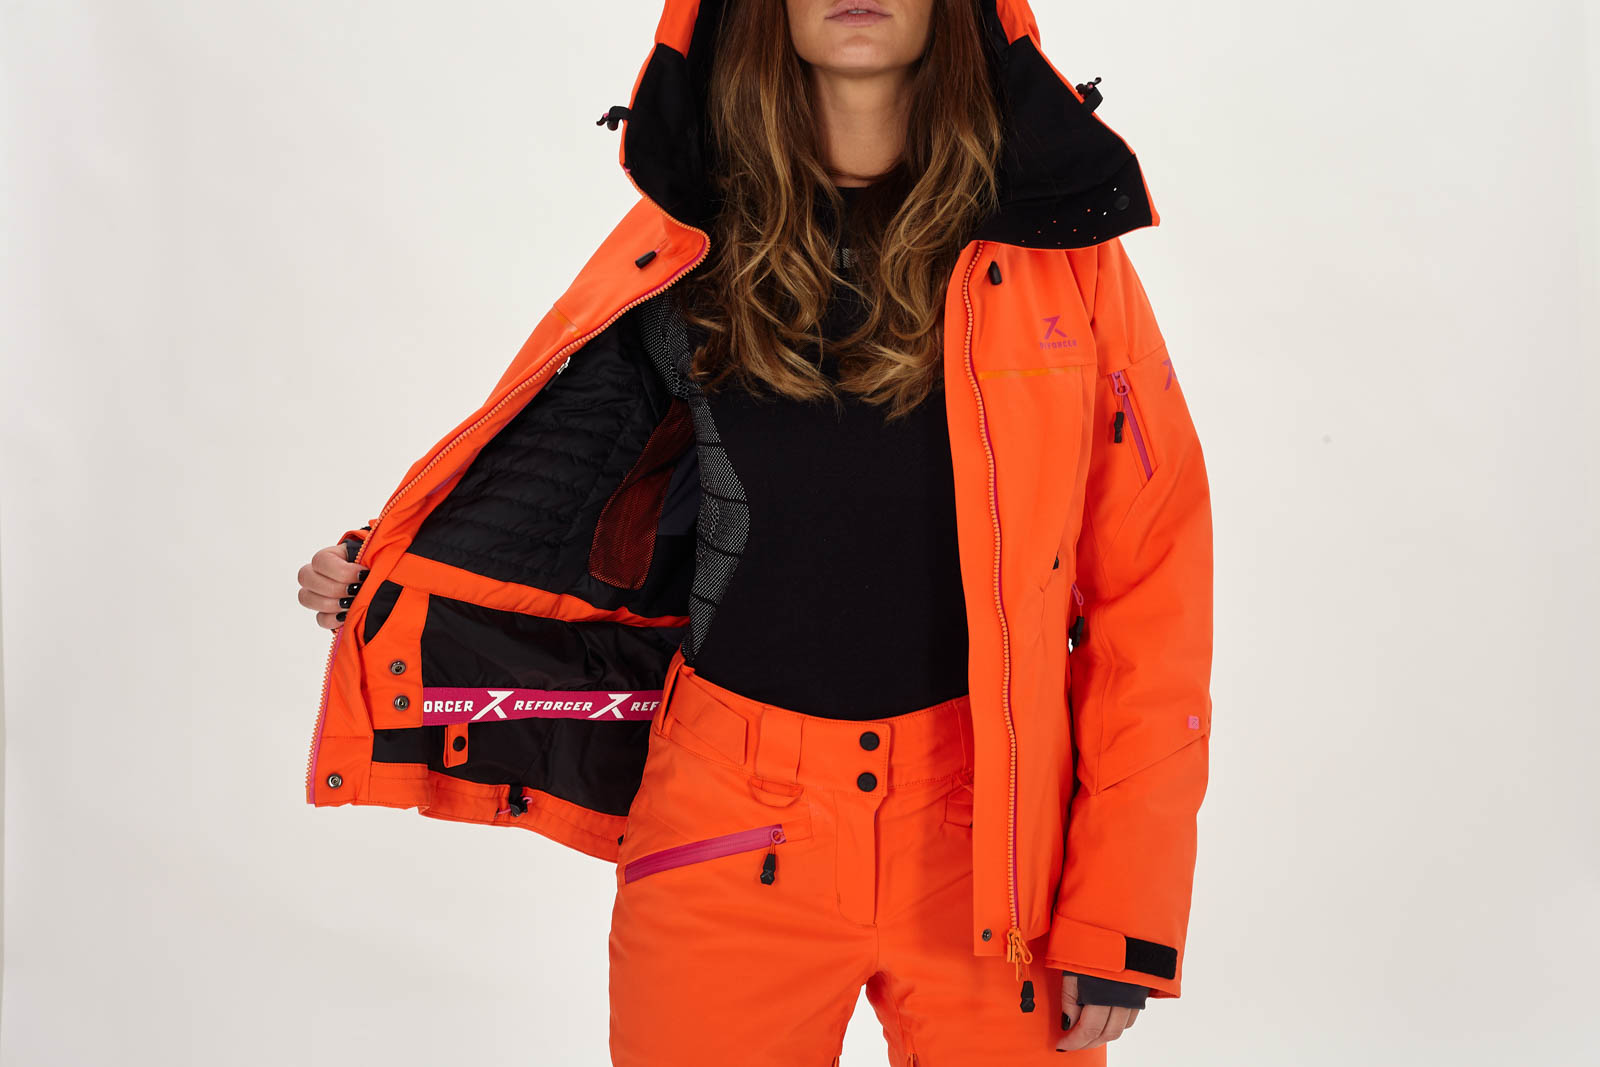 Chaqueta de esquí mujer Advancer Reforcer, ropa de de alta calidad, en Europa